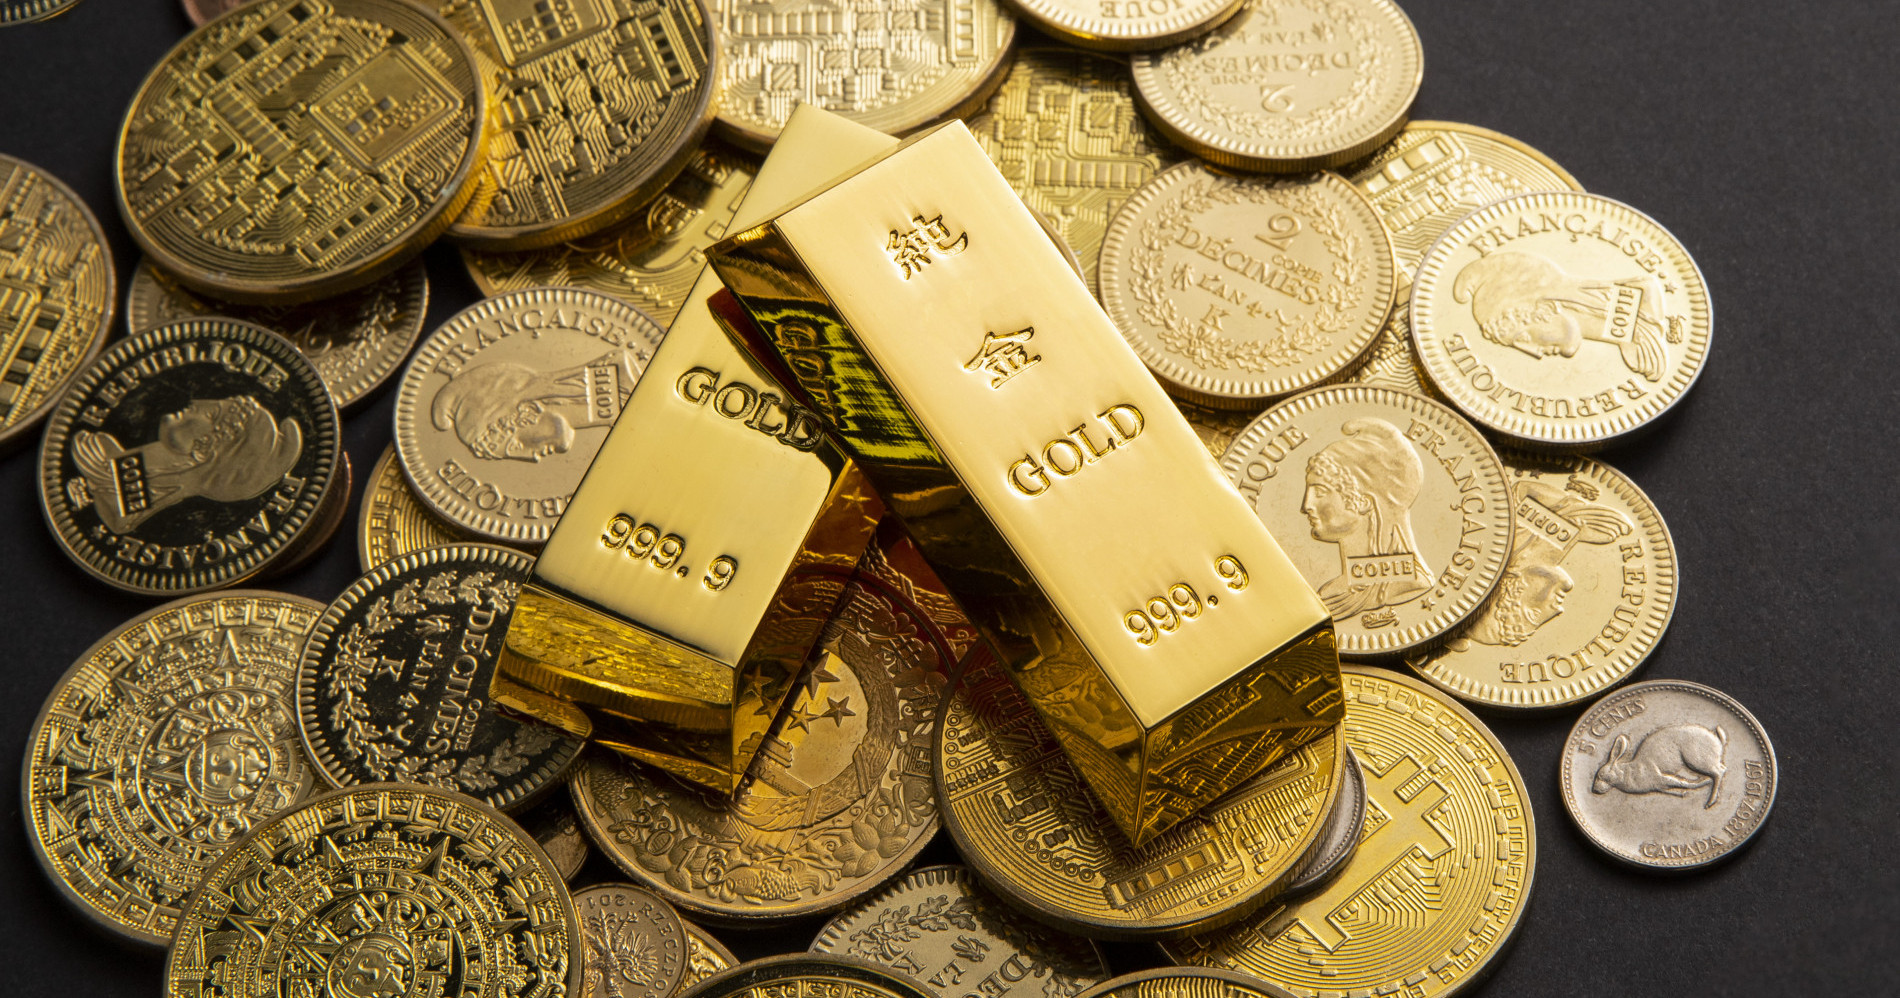 Emas sering dijadikan instrumen investasi karena harganya yang terus naik. (Sumber gambar: freepik)